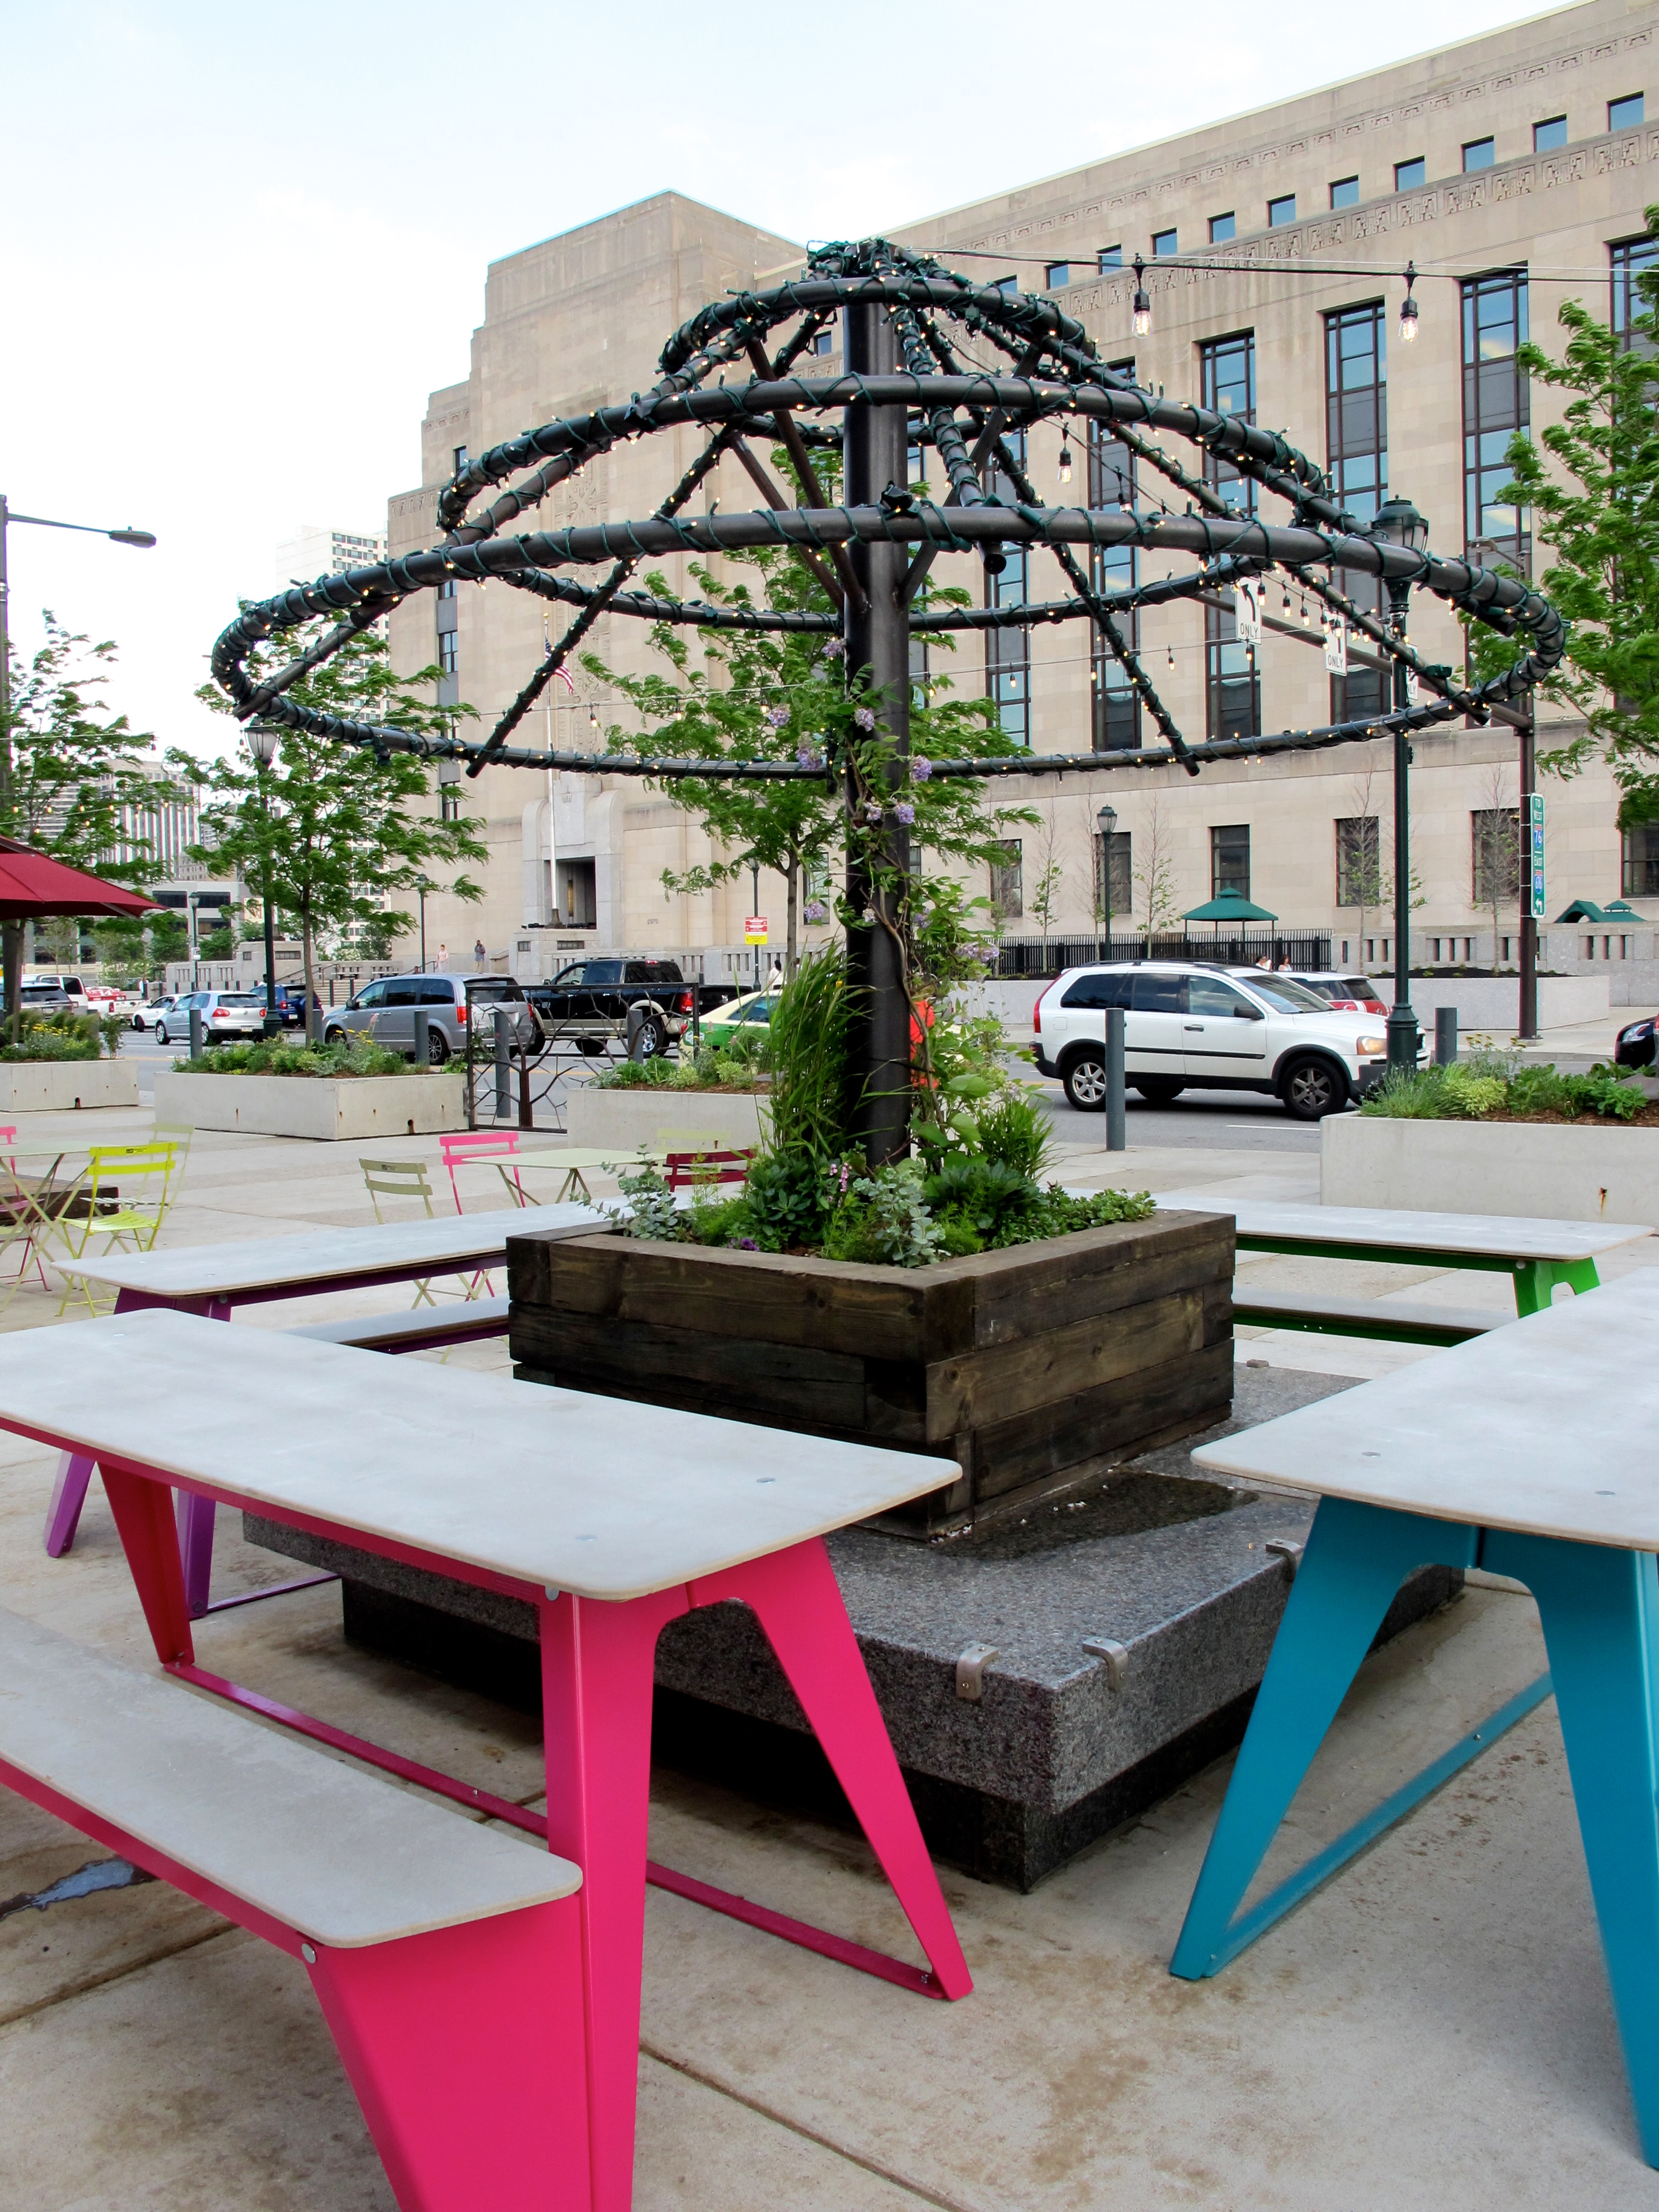 Porch 2.0: Umbrella trellis and new picnic tables